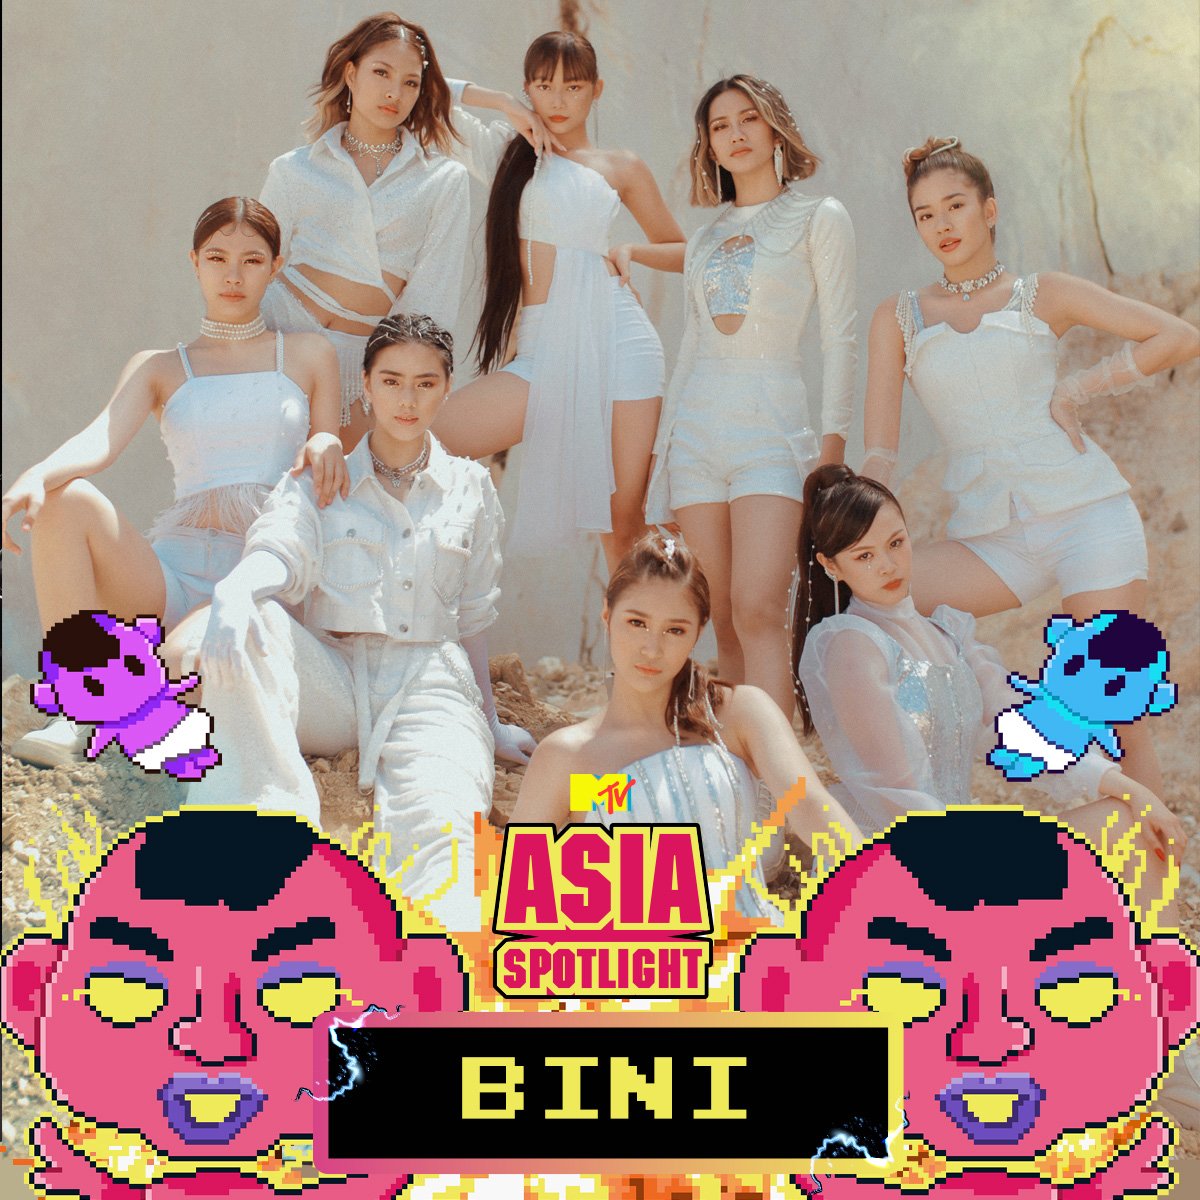 BINI is MTV Asia's Spotlight artist